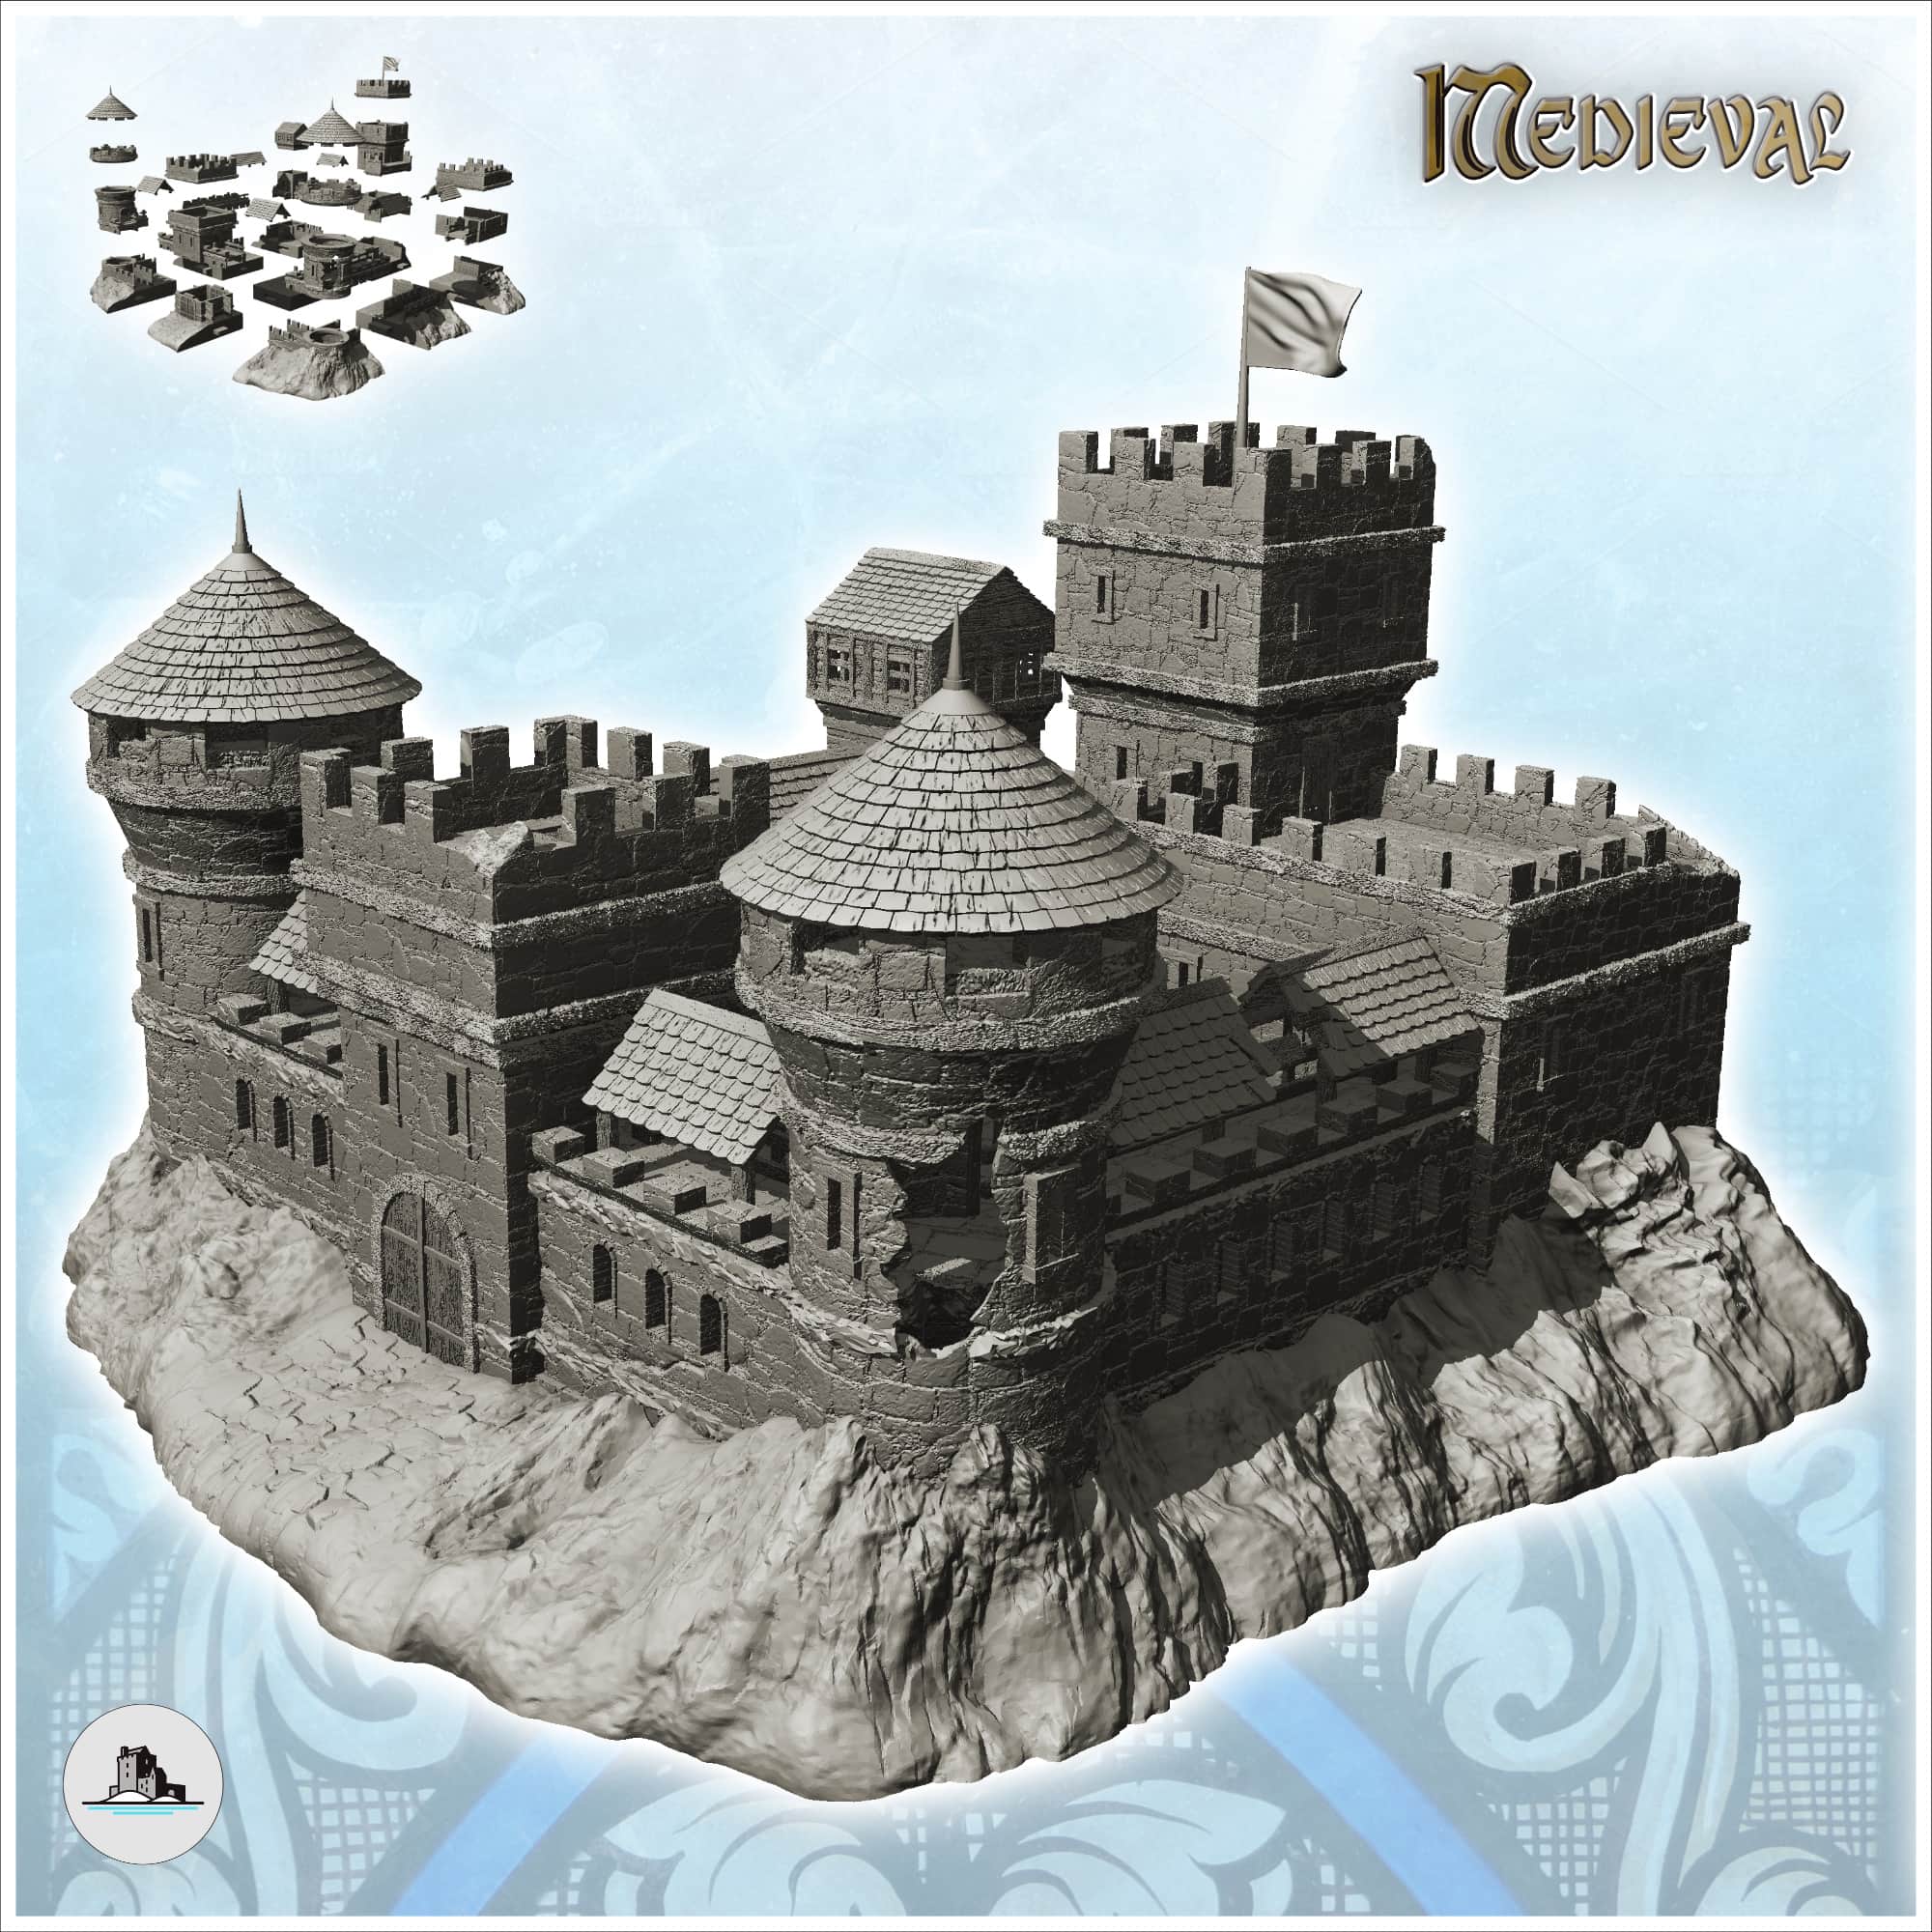 Domus-kits Medieval Series Burgen 5 Castle Scale 1:87 MINT 40905